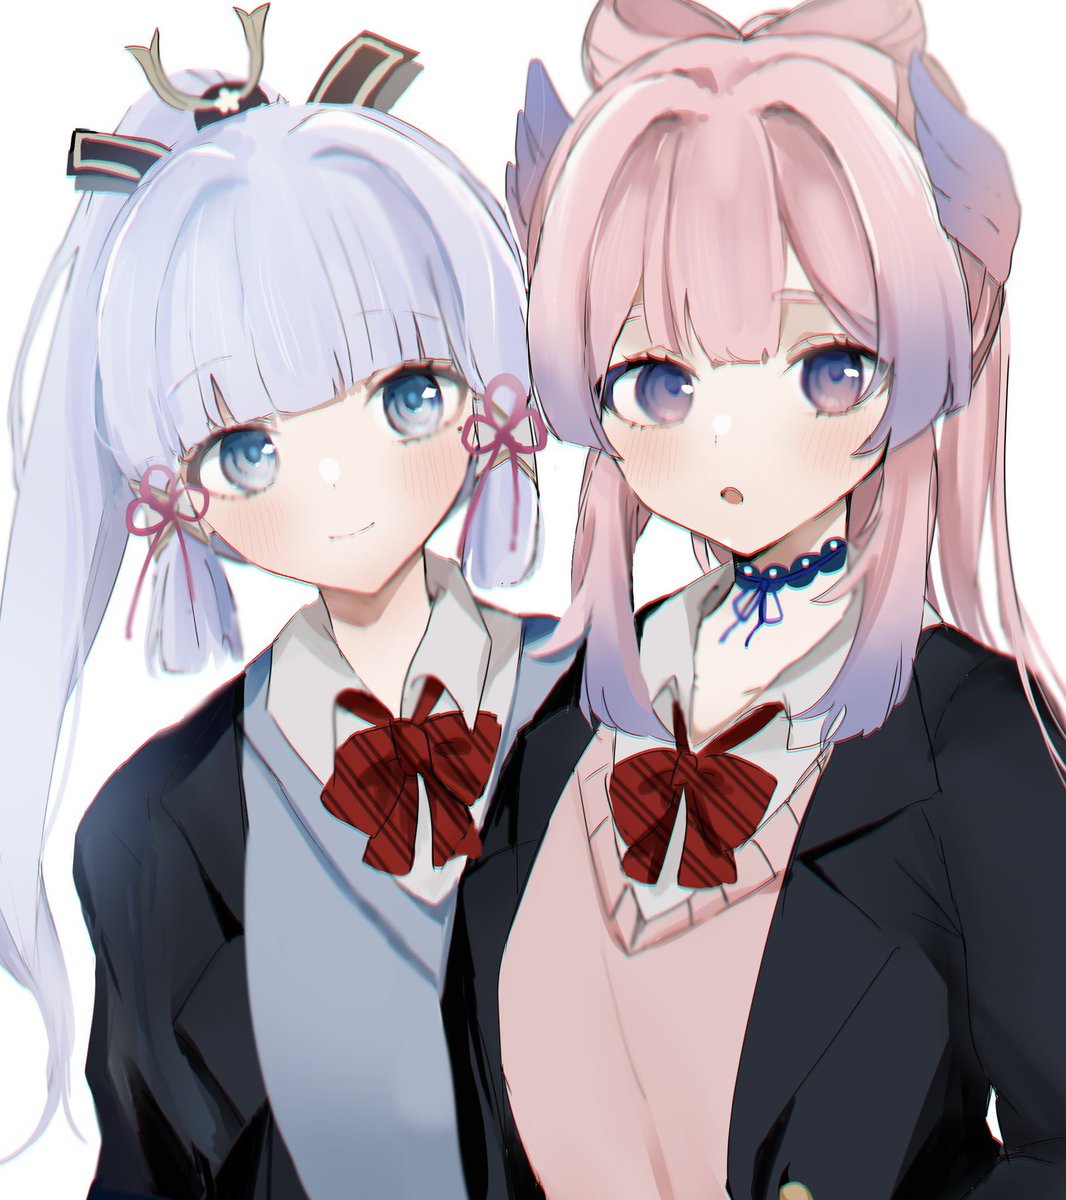 kamisato ayaka ,sangonomiya kokomi multiple girls 2girls pink hair blue eyes school uniform bow blue hair  illustration images